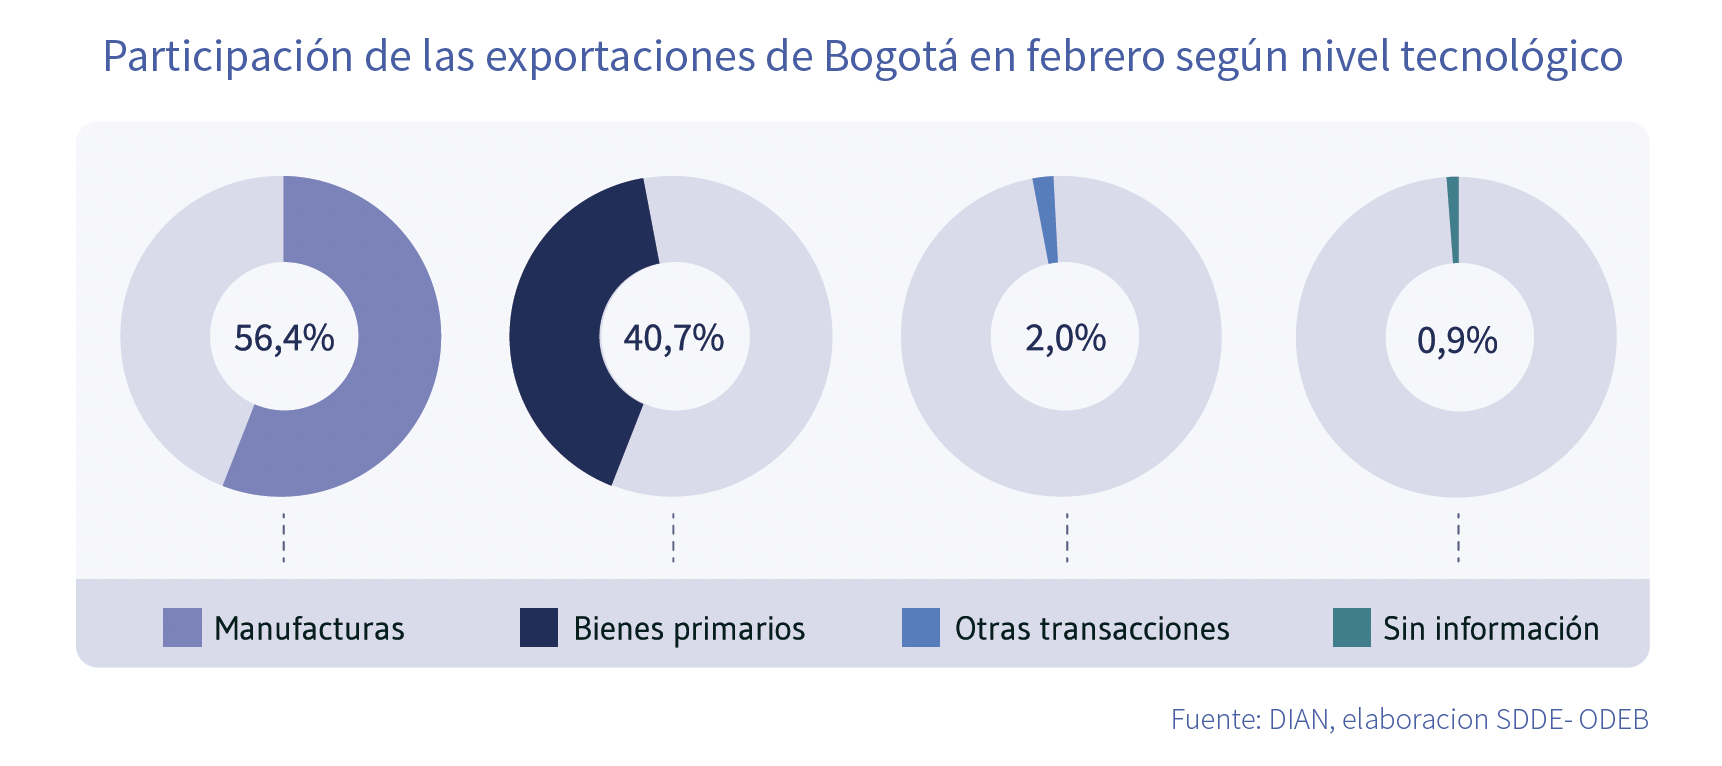 Exportaciones de Bogotá en febrero nivel tecnológico